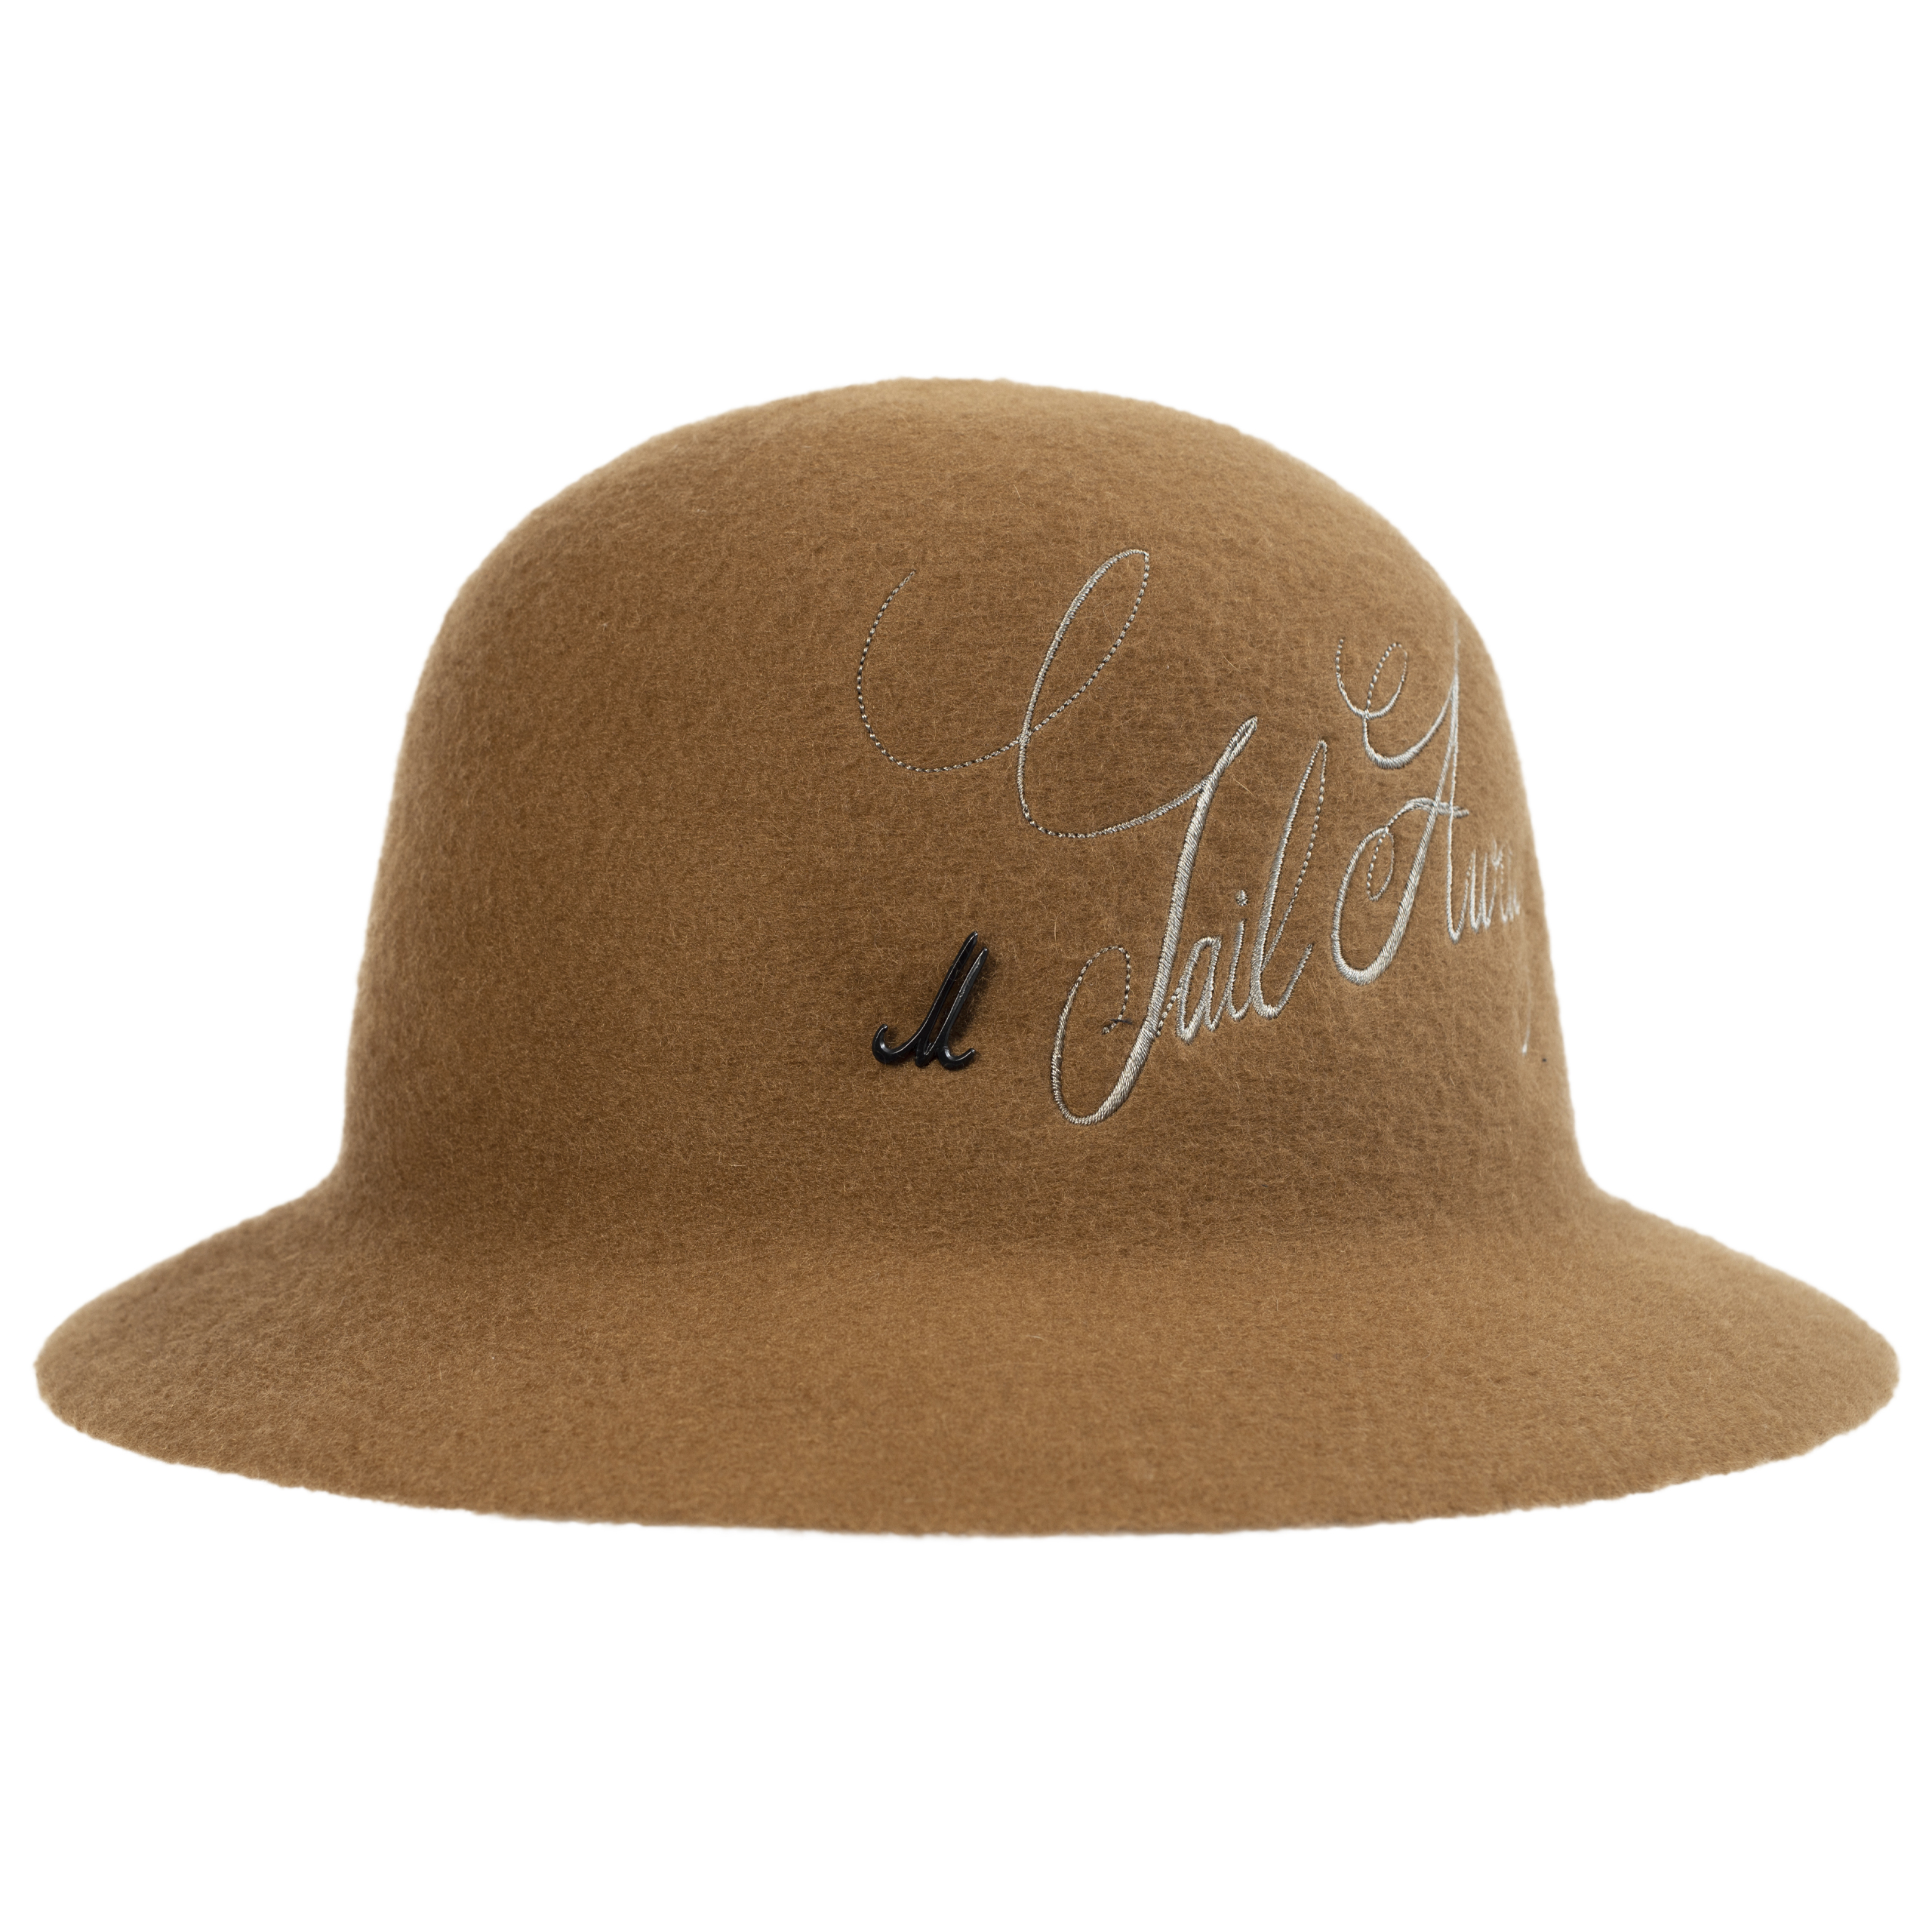 Шерстяная шляпа с вышитым логотипом Junya Watanabe WH-K606-051-4, размер 3 - фото 1